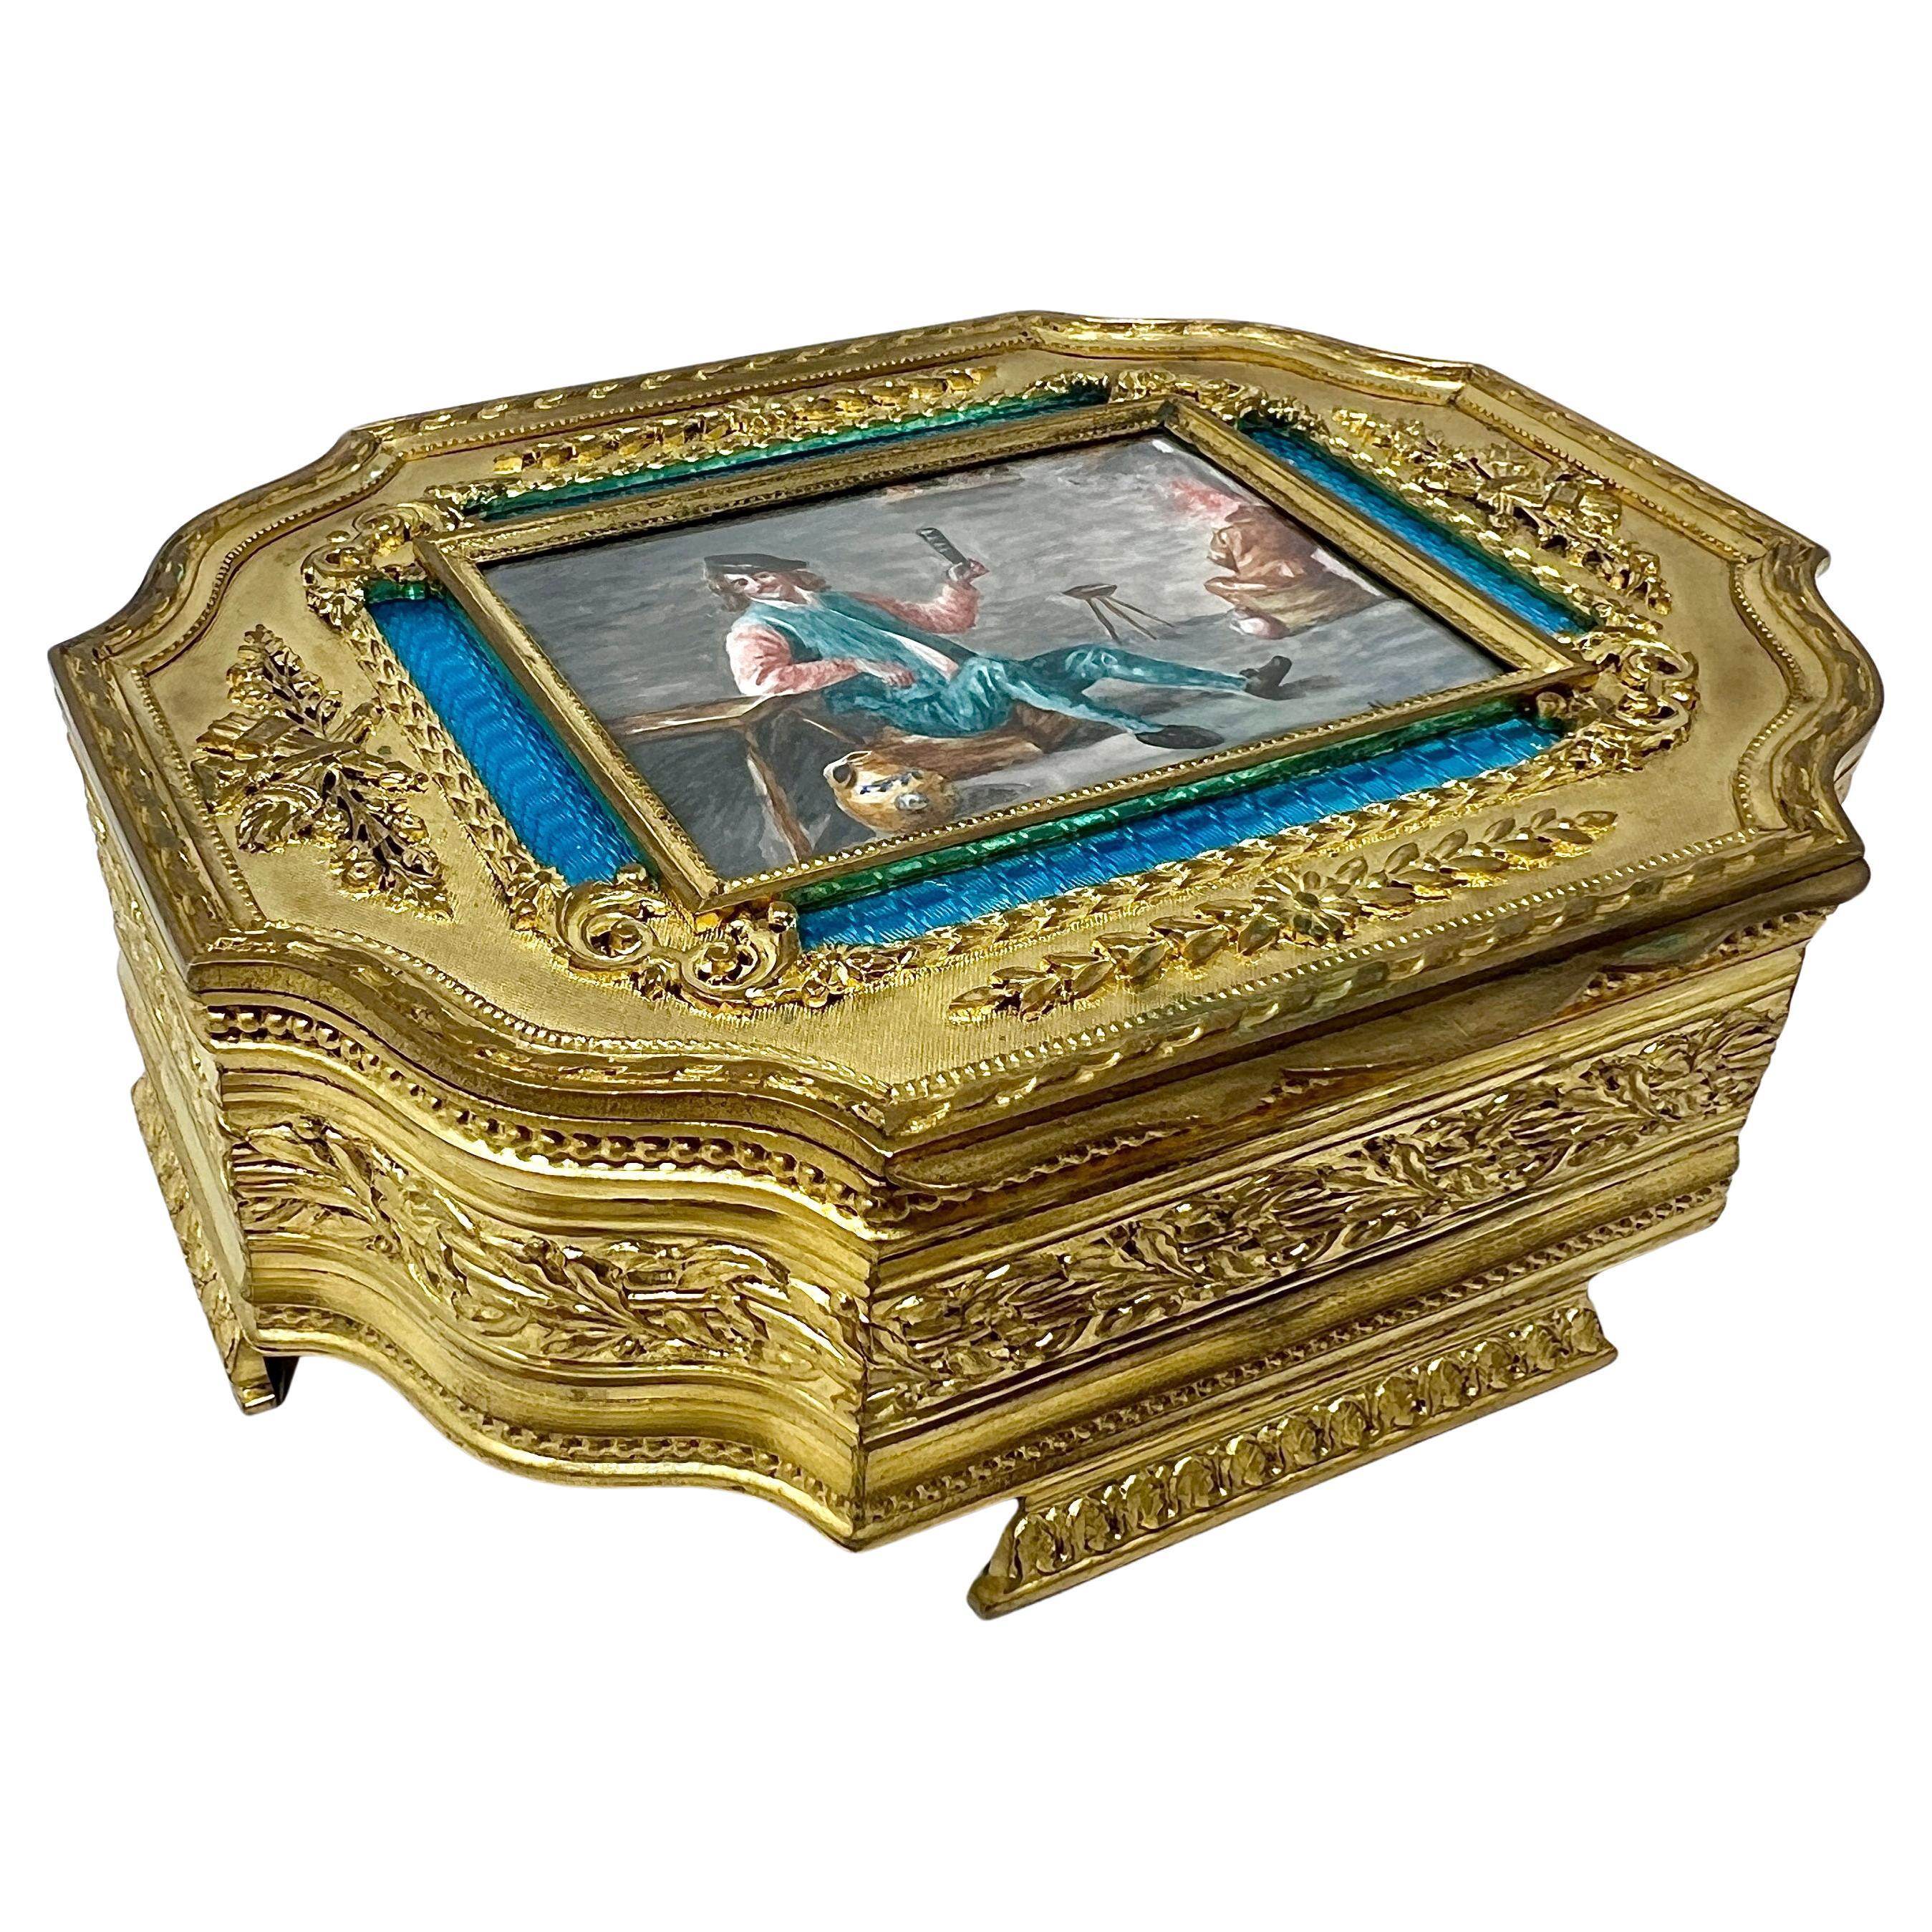 Ancienne boîte à bijoux française en porcelaine émaillée bleue et bronze doré, vers 1910.